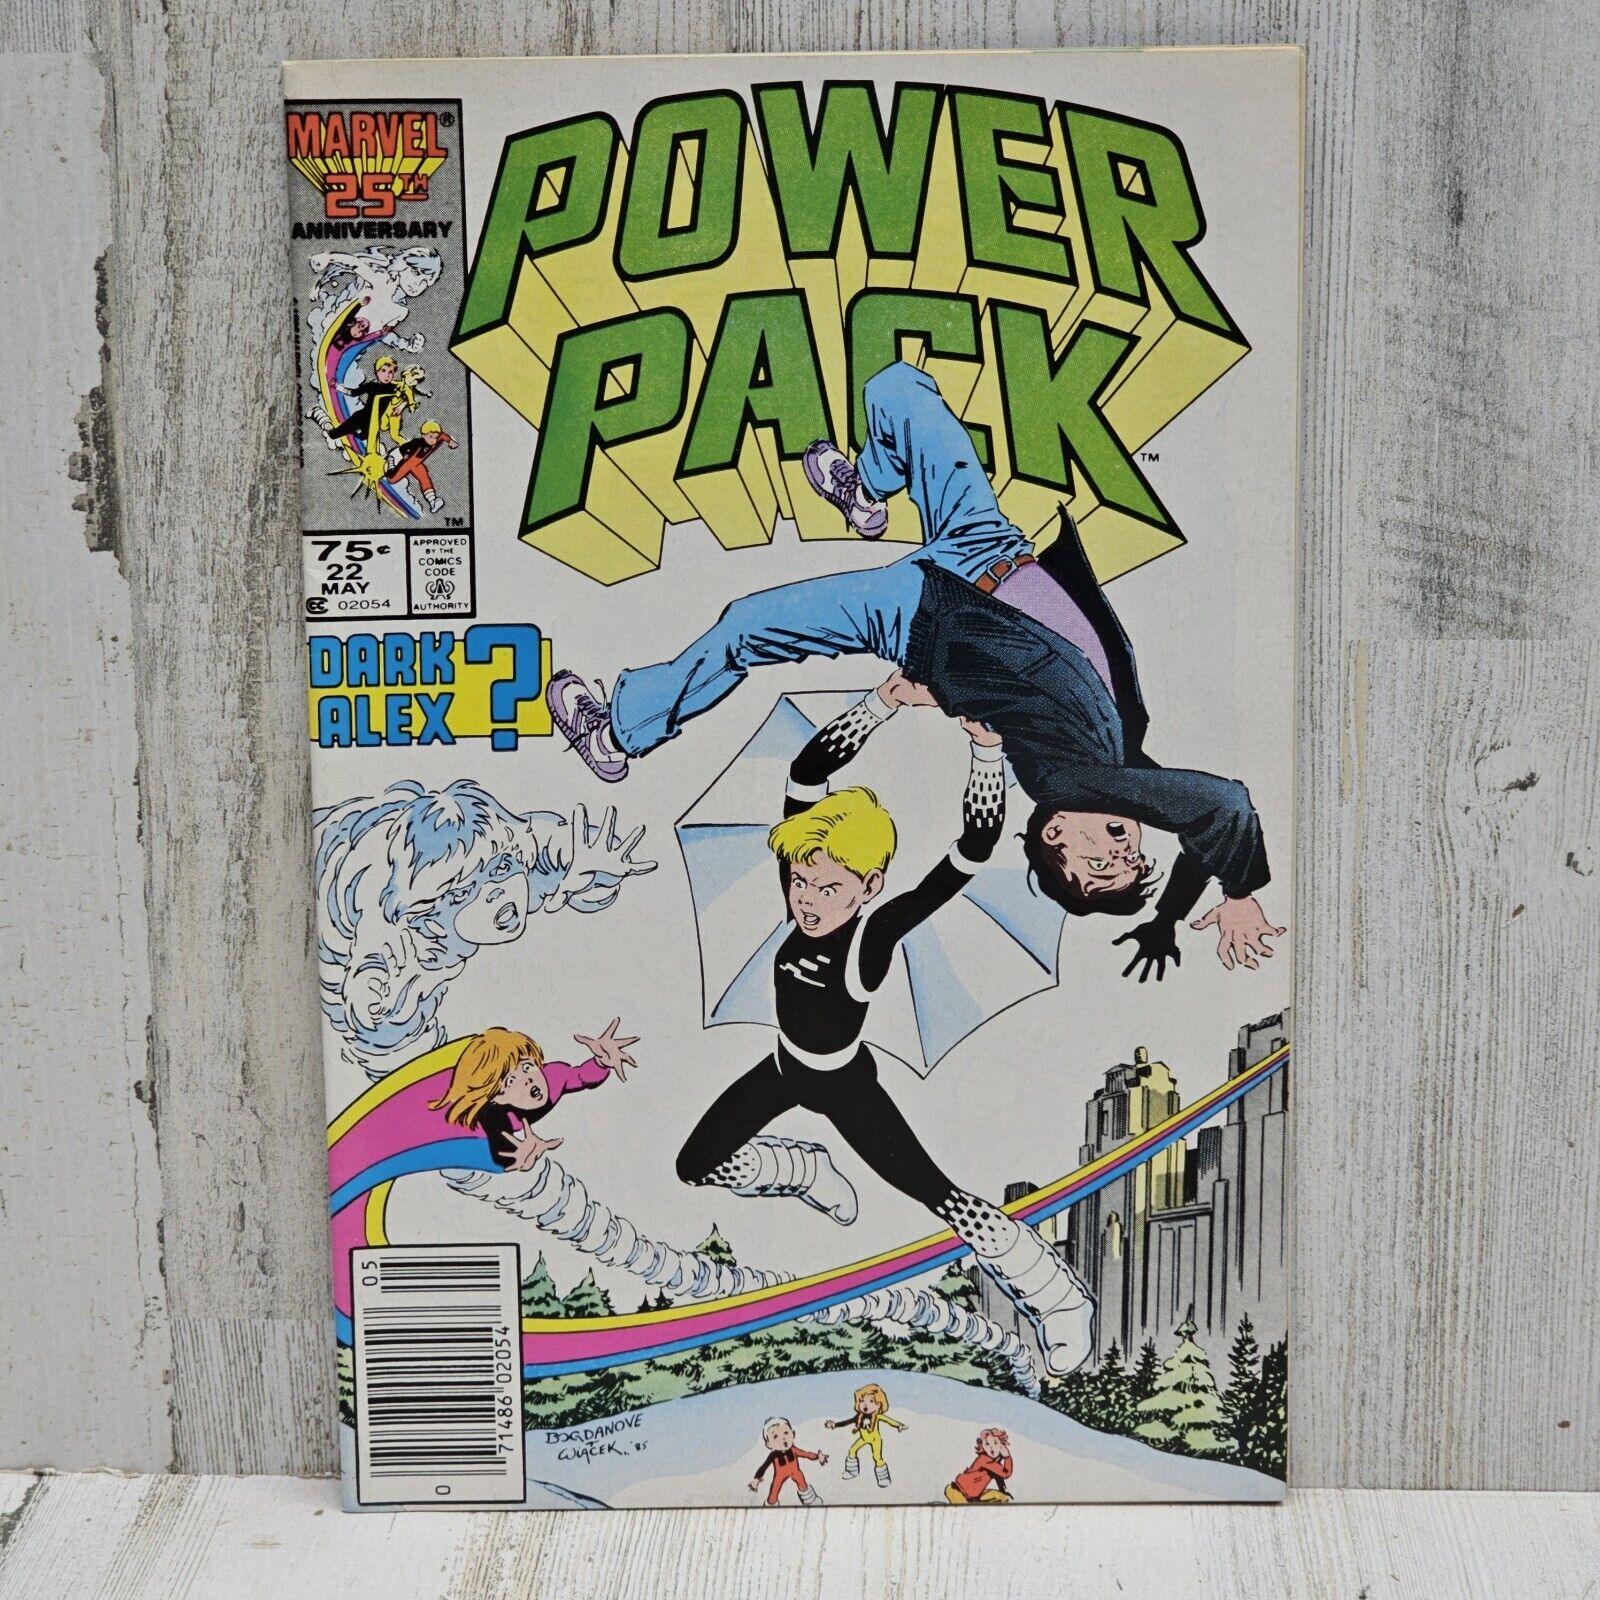 Marvel Power Pack #22 